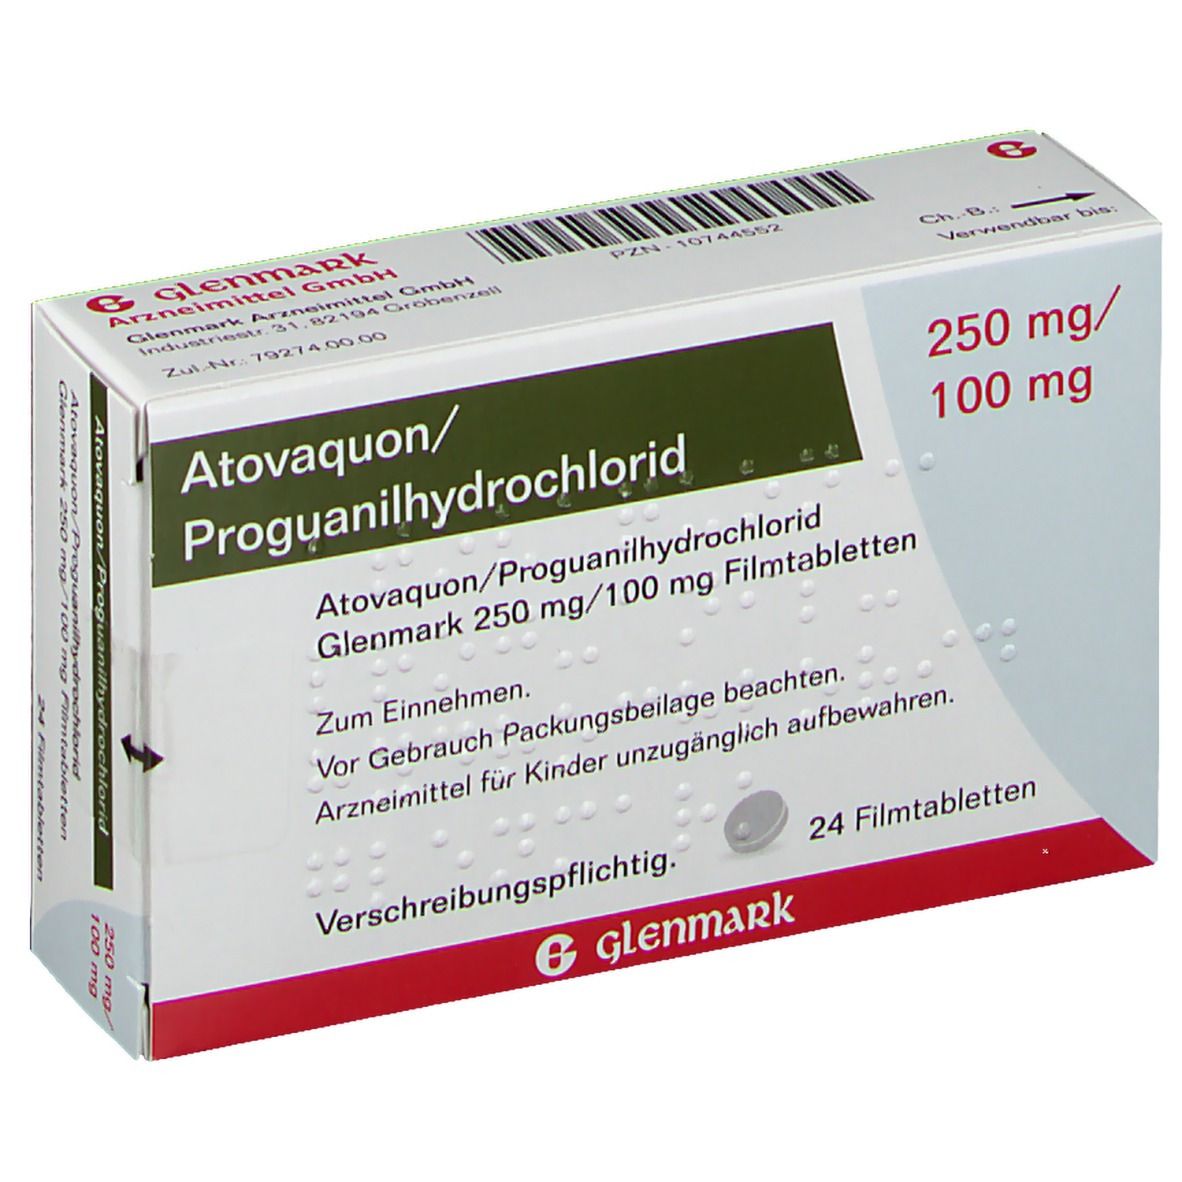 Atovaquon/Proguanilhydrochlorid Glenmark 250 mg/100 mg